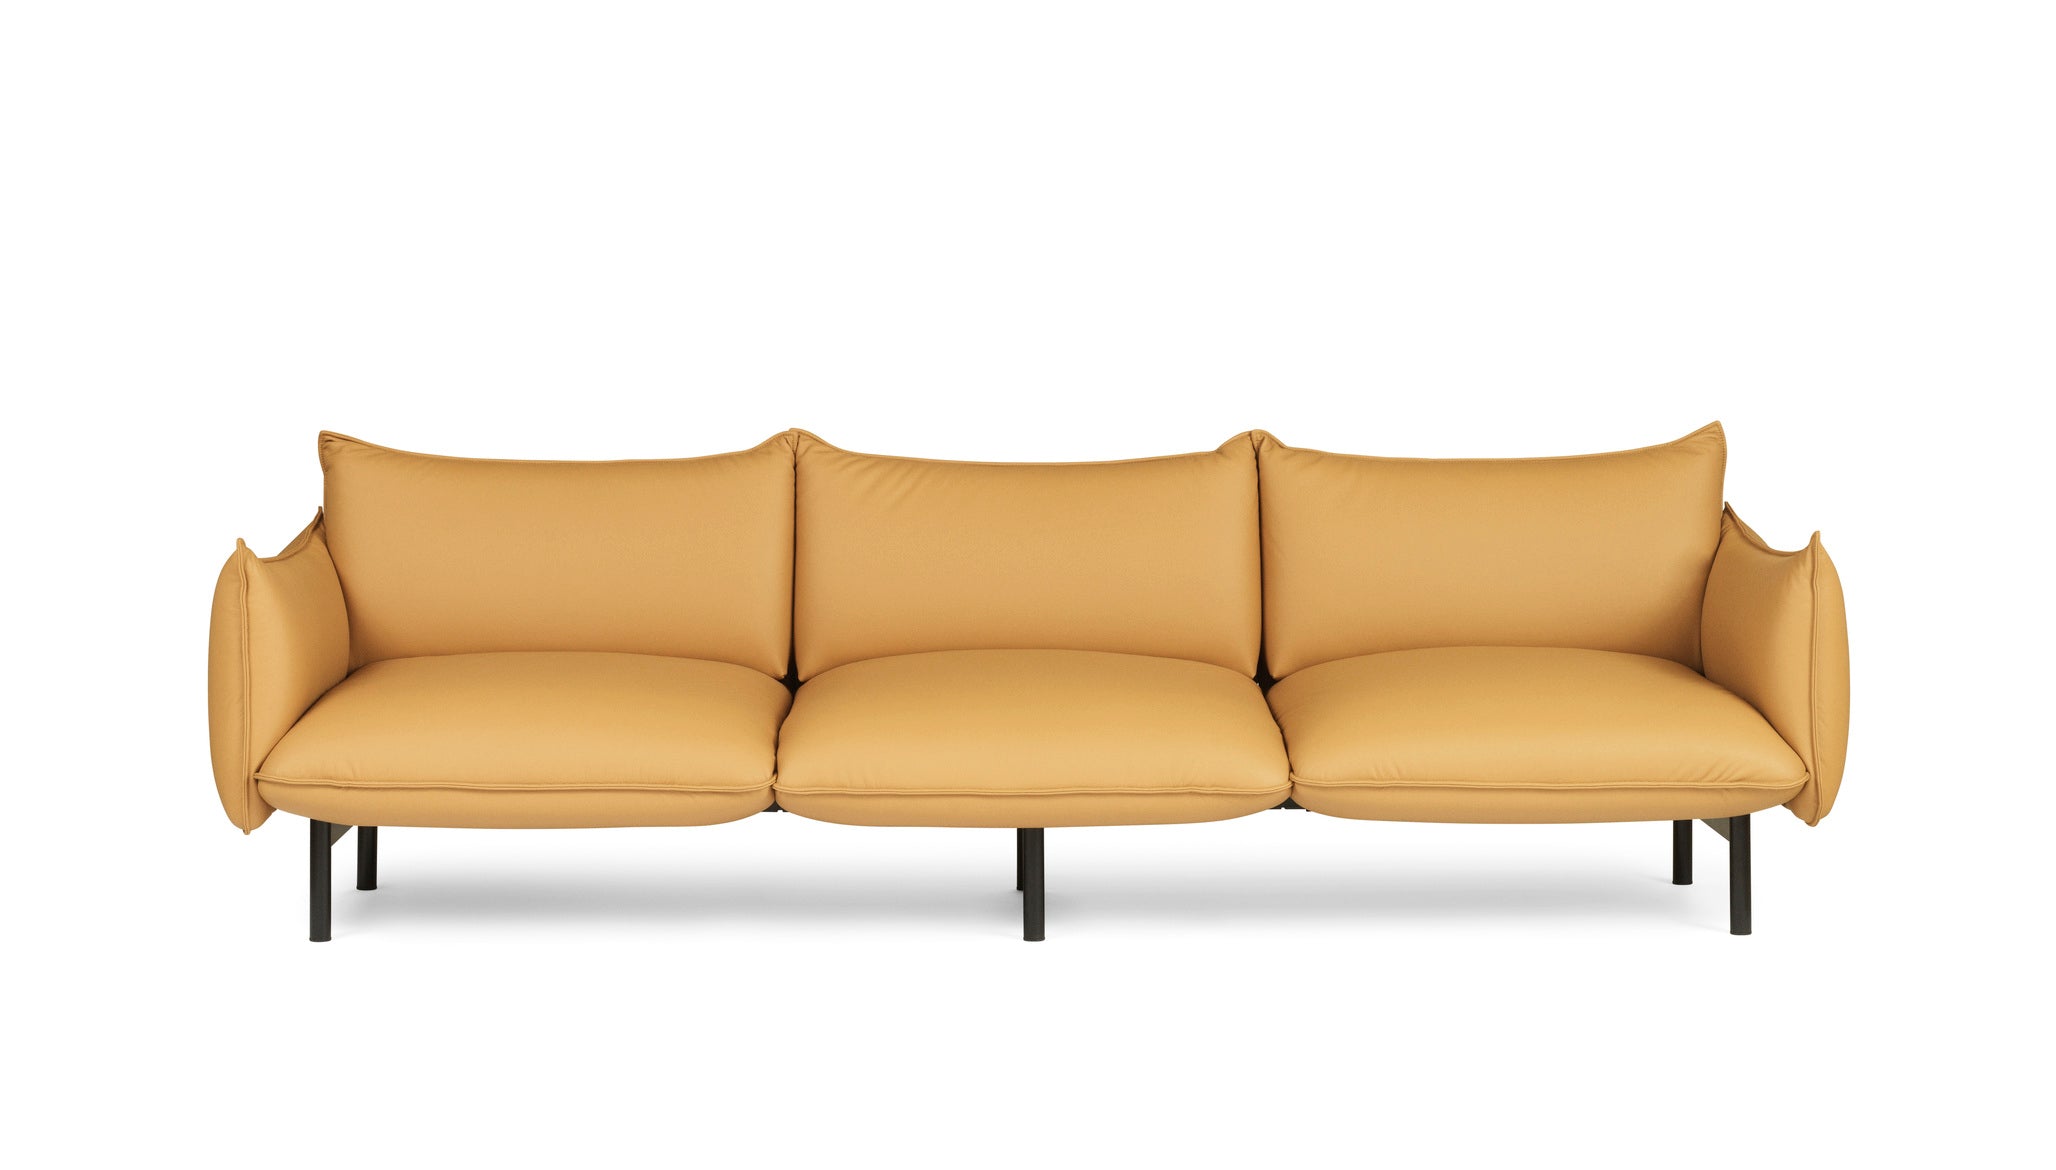 Ark 3er Sofa in Gelb / Schwarz präsentiert im Onlineshop von KAQTU Design AG. 3er Sofa ist von Normann Copenhagen